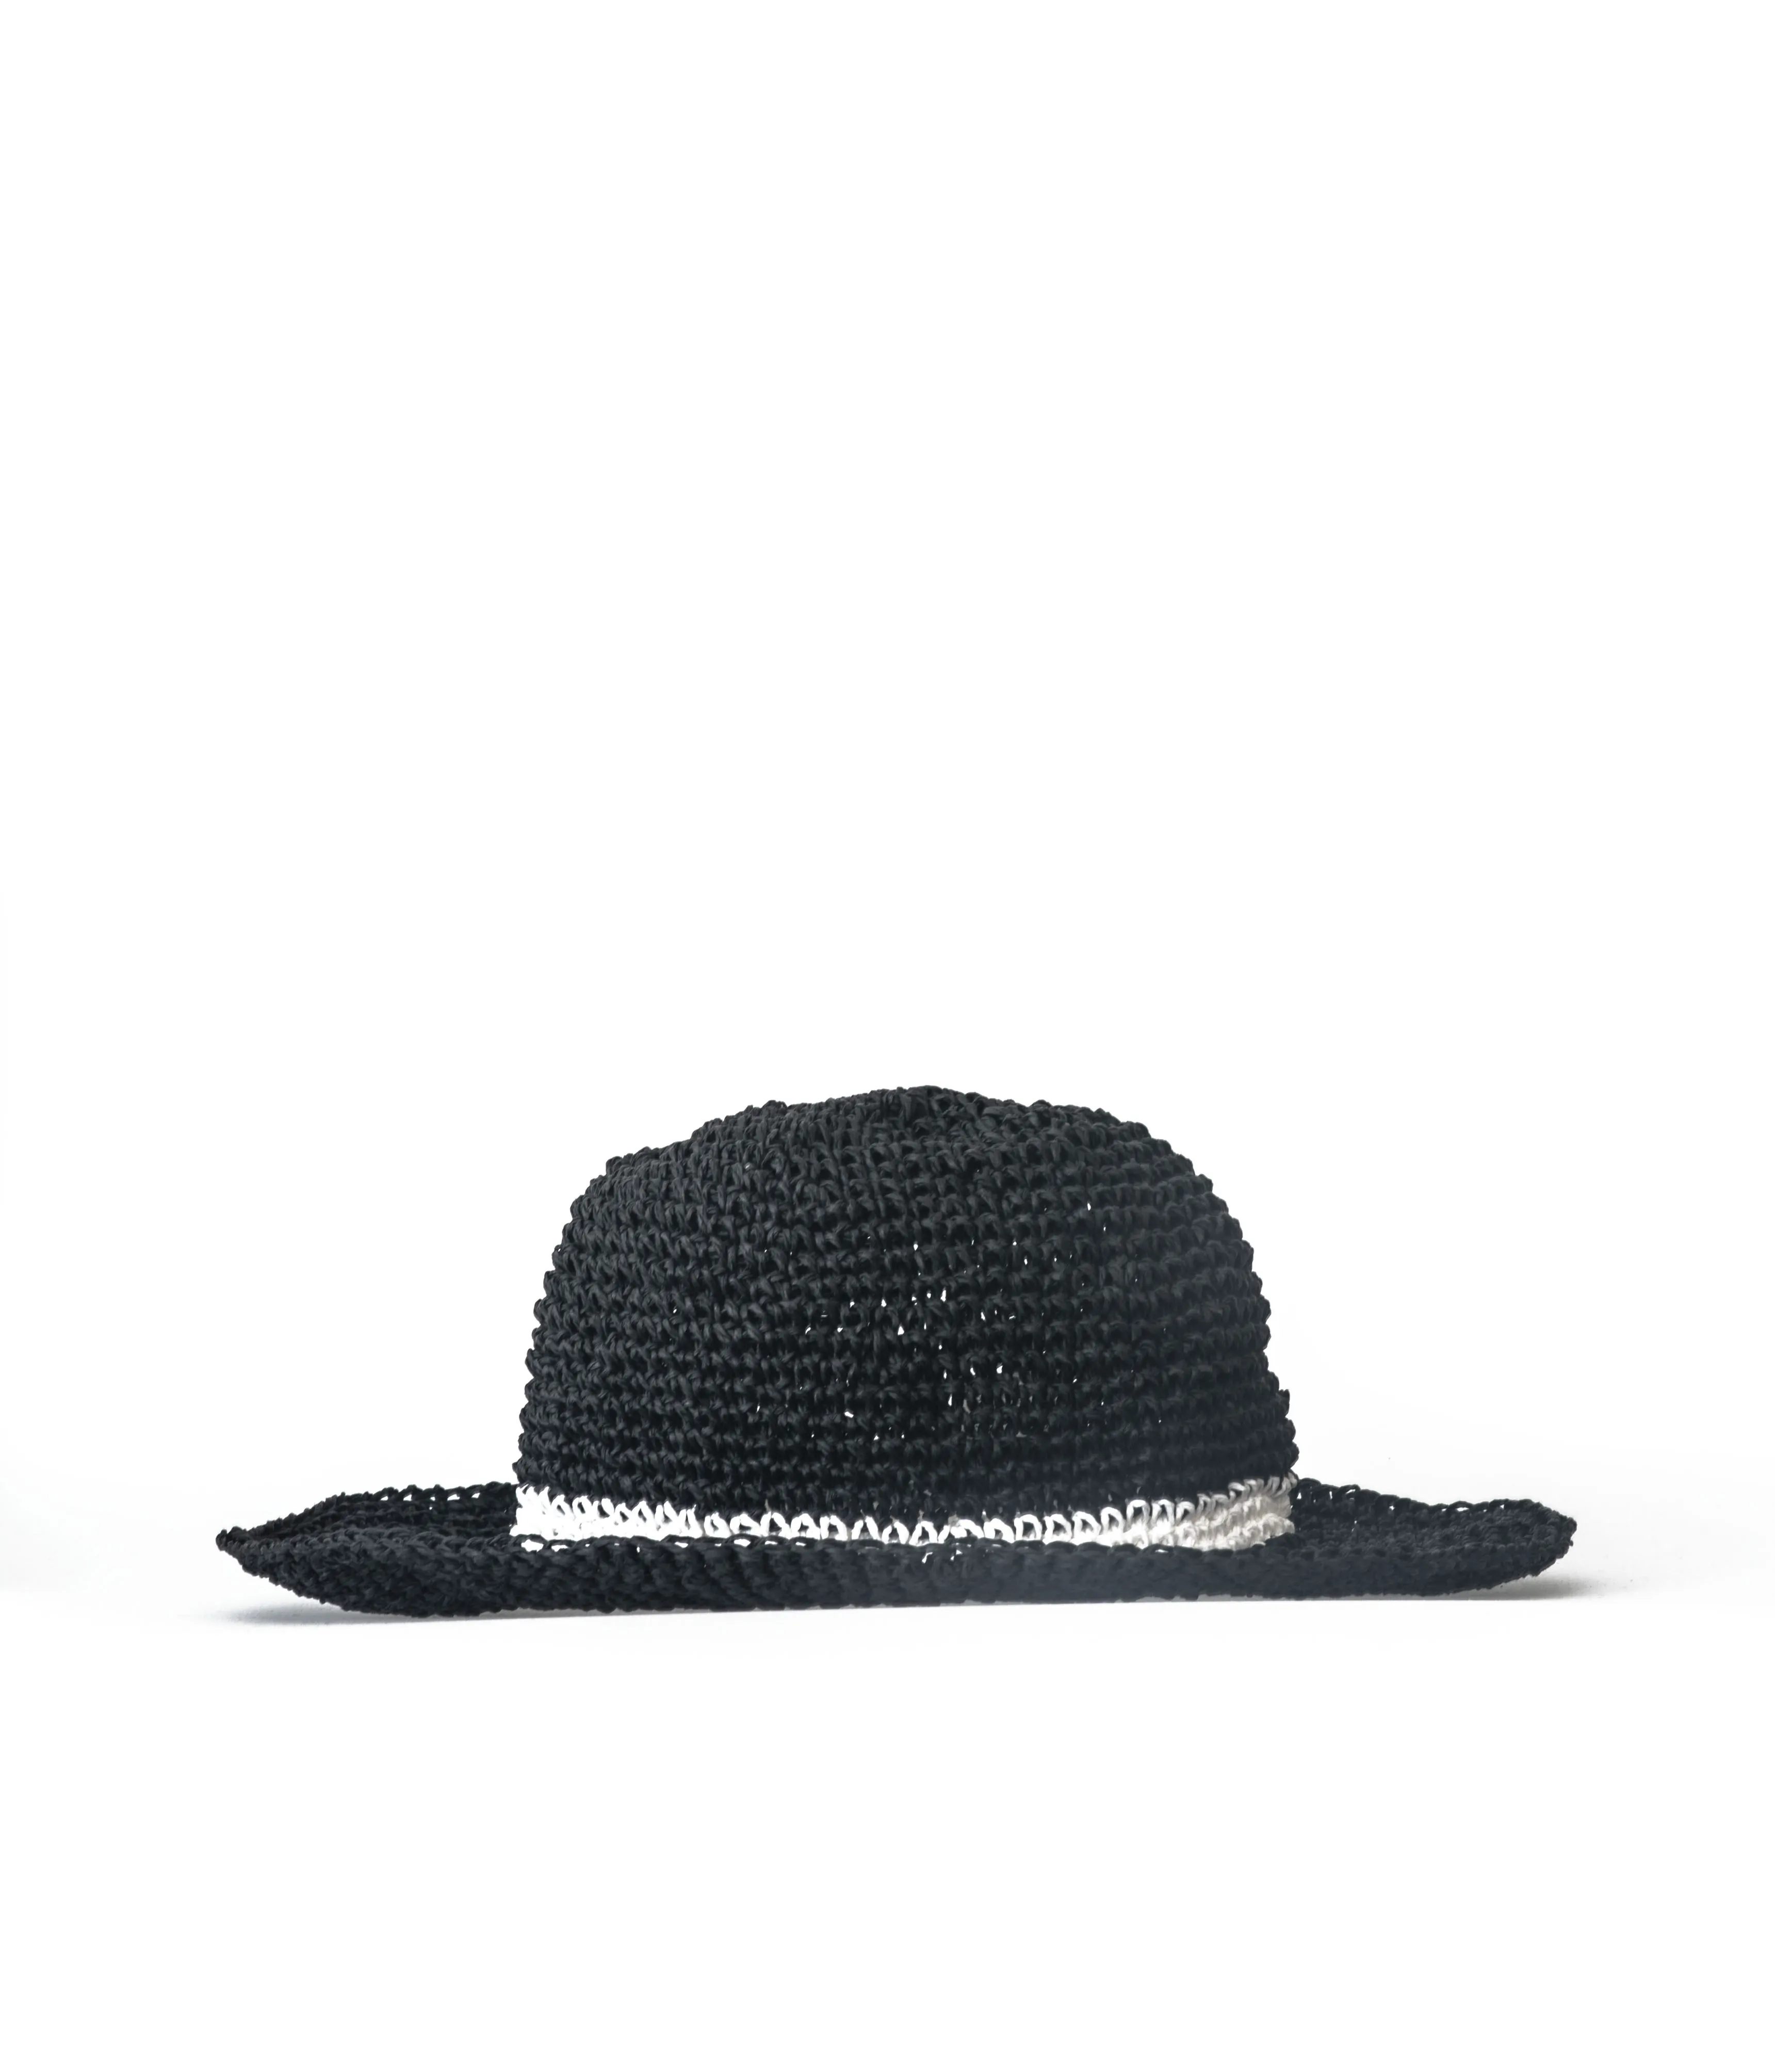 Шляпа женская Соломенная с широкими полями, Солнцезащитная пляжная шапка, чёрная и белая, модель 2021, на лето от AliExpress RU&CIS NEW